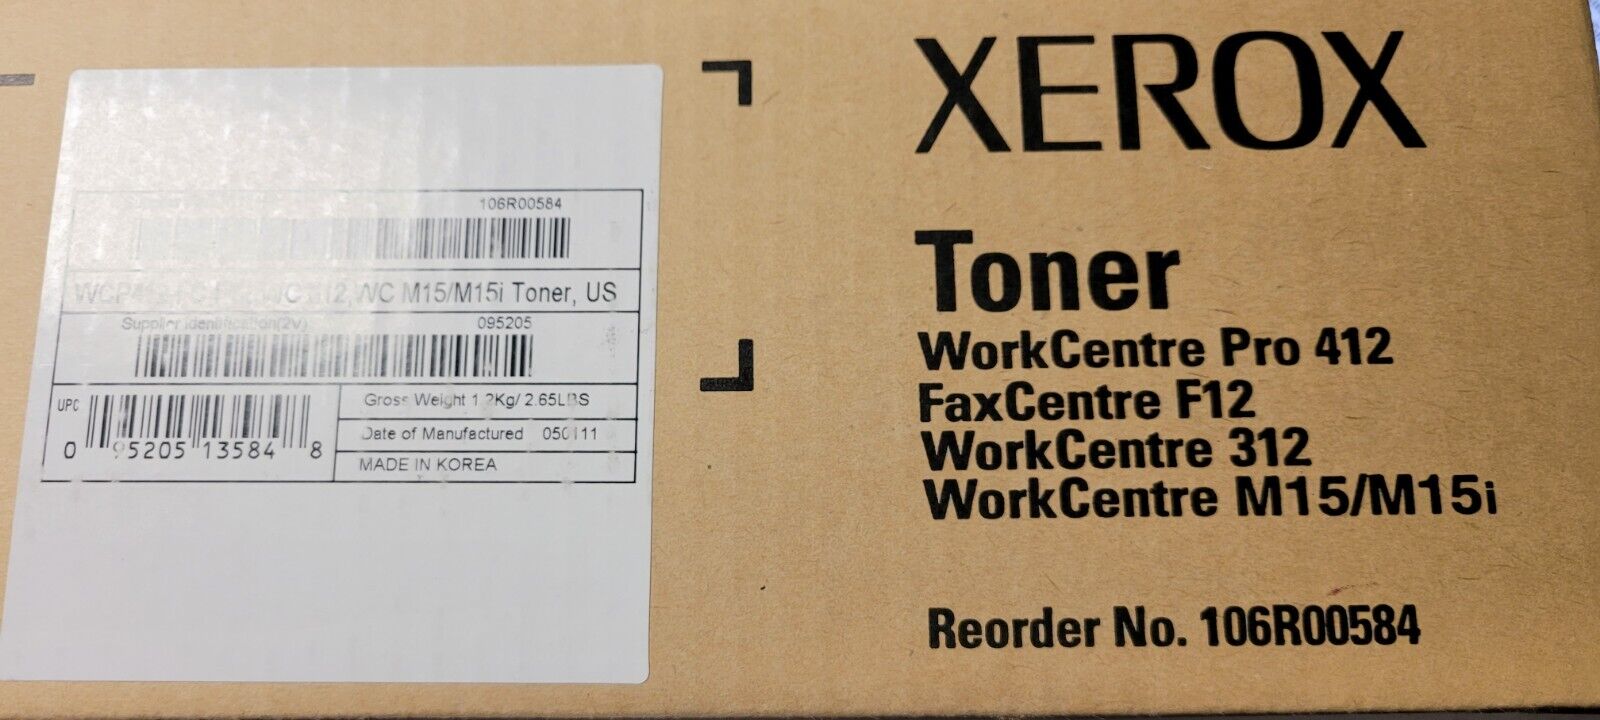 XEROX TONER WORKCENTRE PRO 412 FAX CENTRE F12 WORK CENTRE 312 M15/M15i NEW